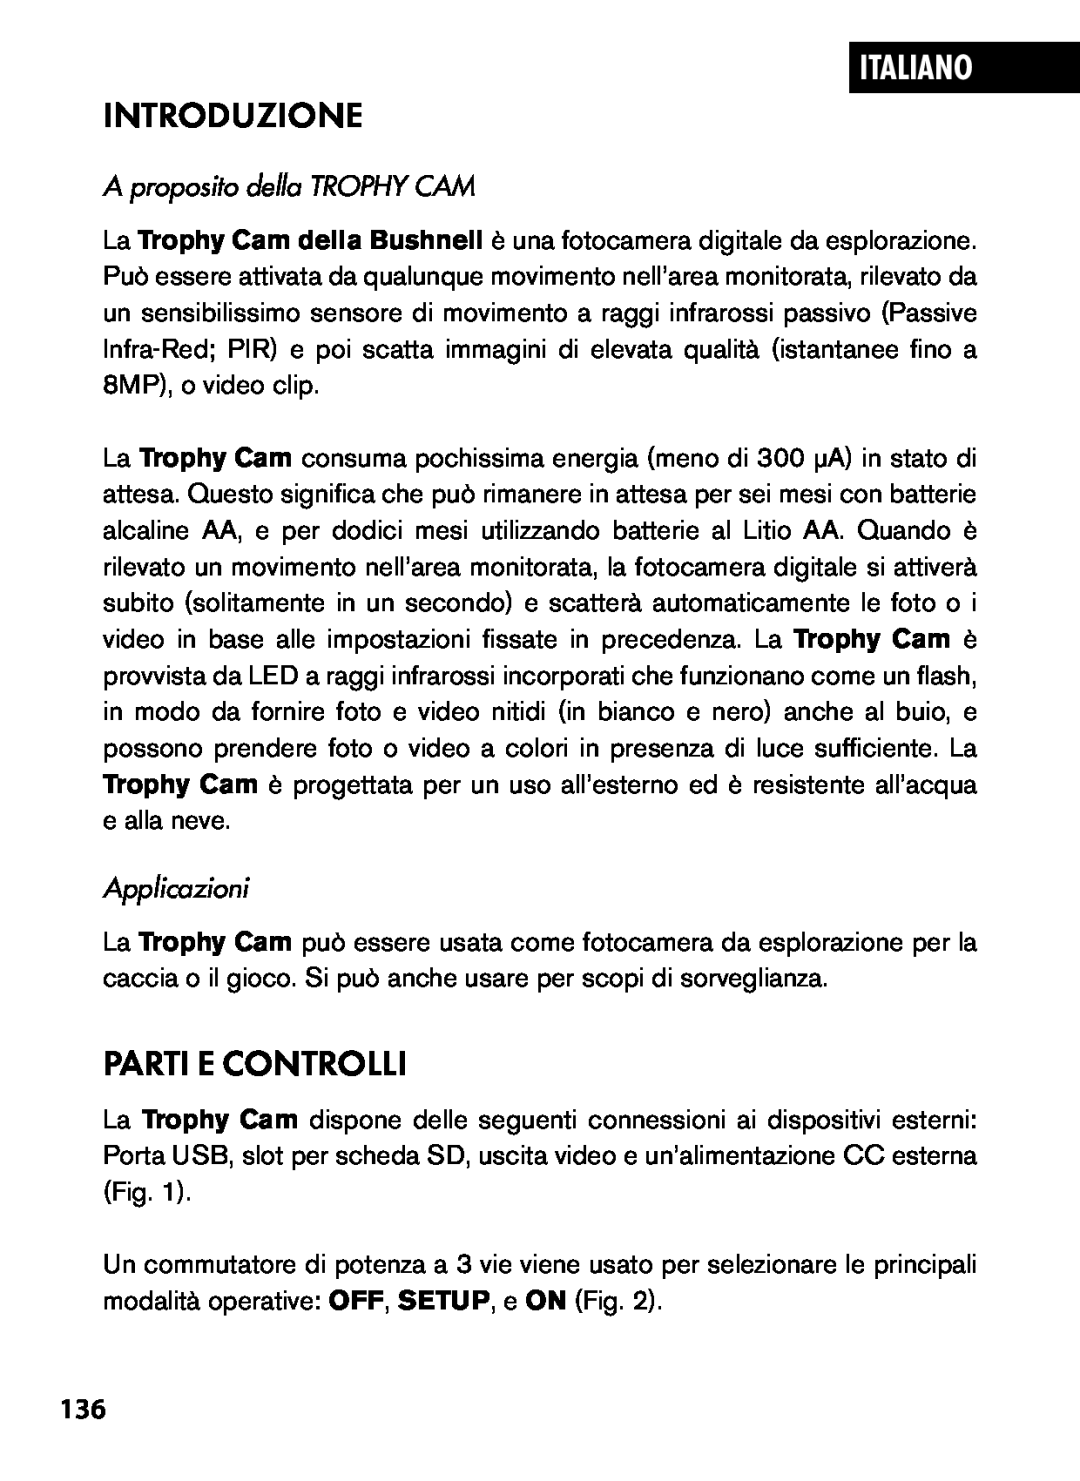 Bushnell 119445, 119455, 119435 Introduzione, Parti E Controlli, Italiano, A proposito della TROPHY CAM, Applicazioni 